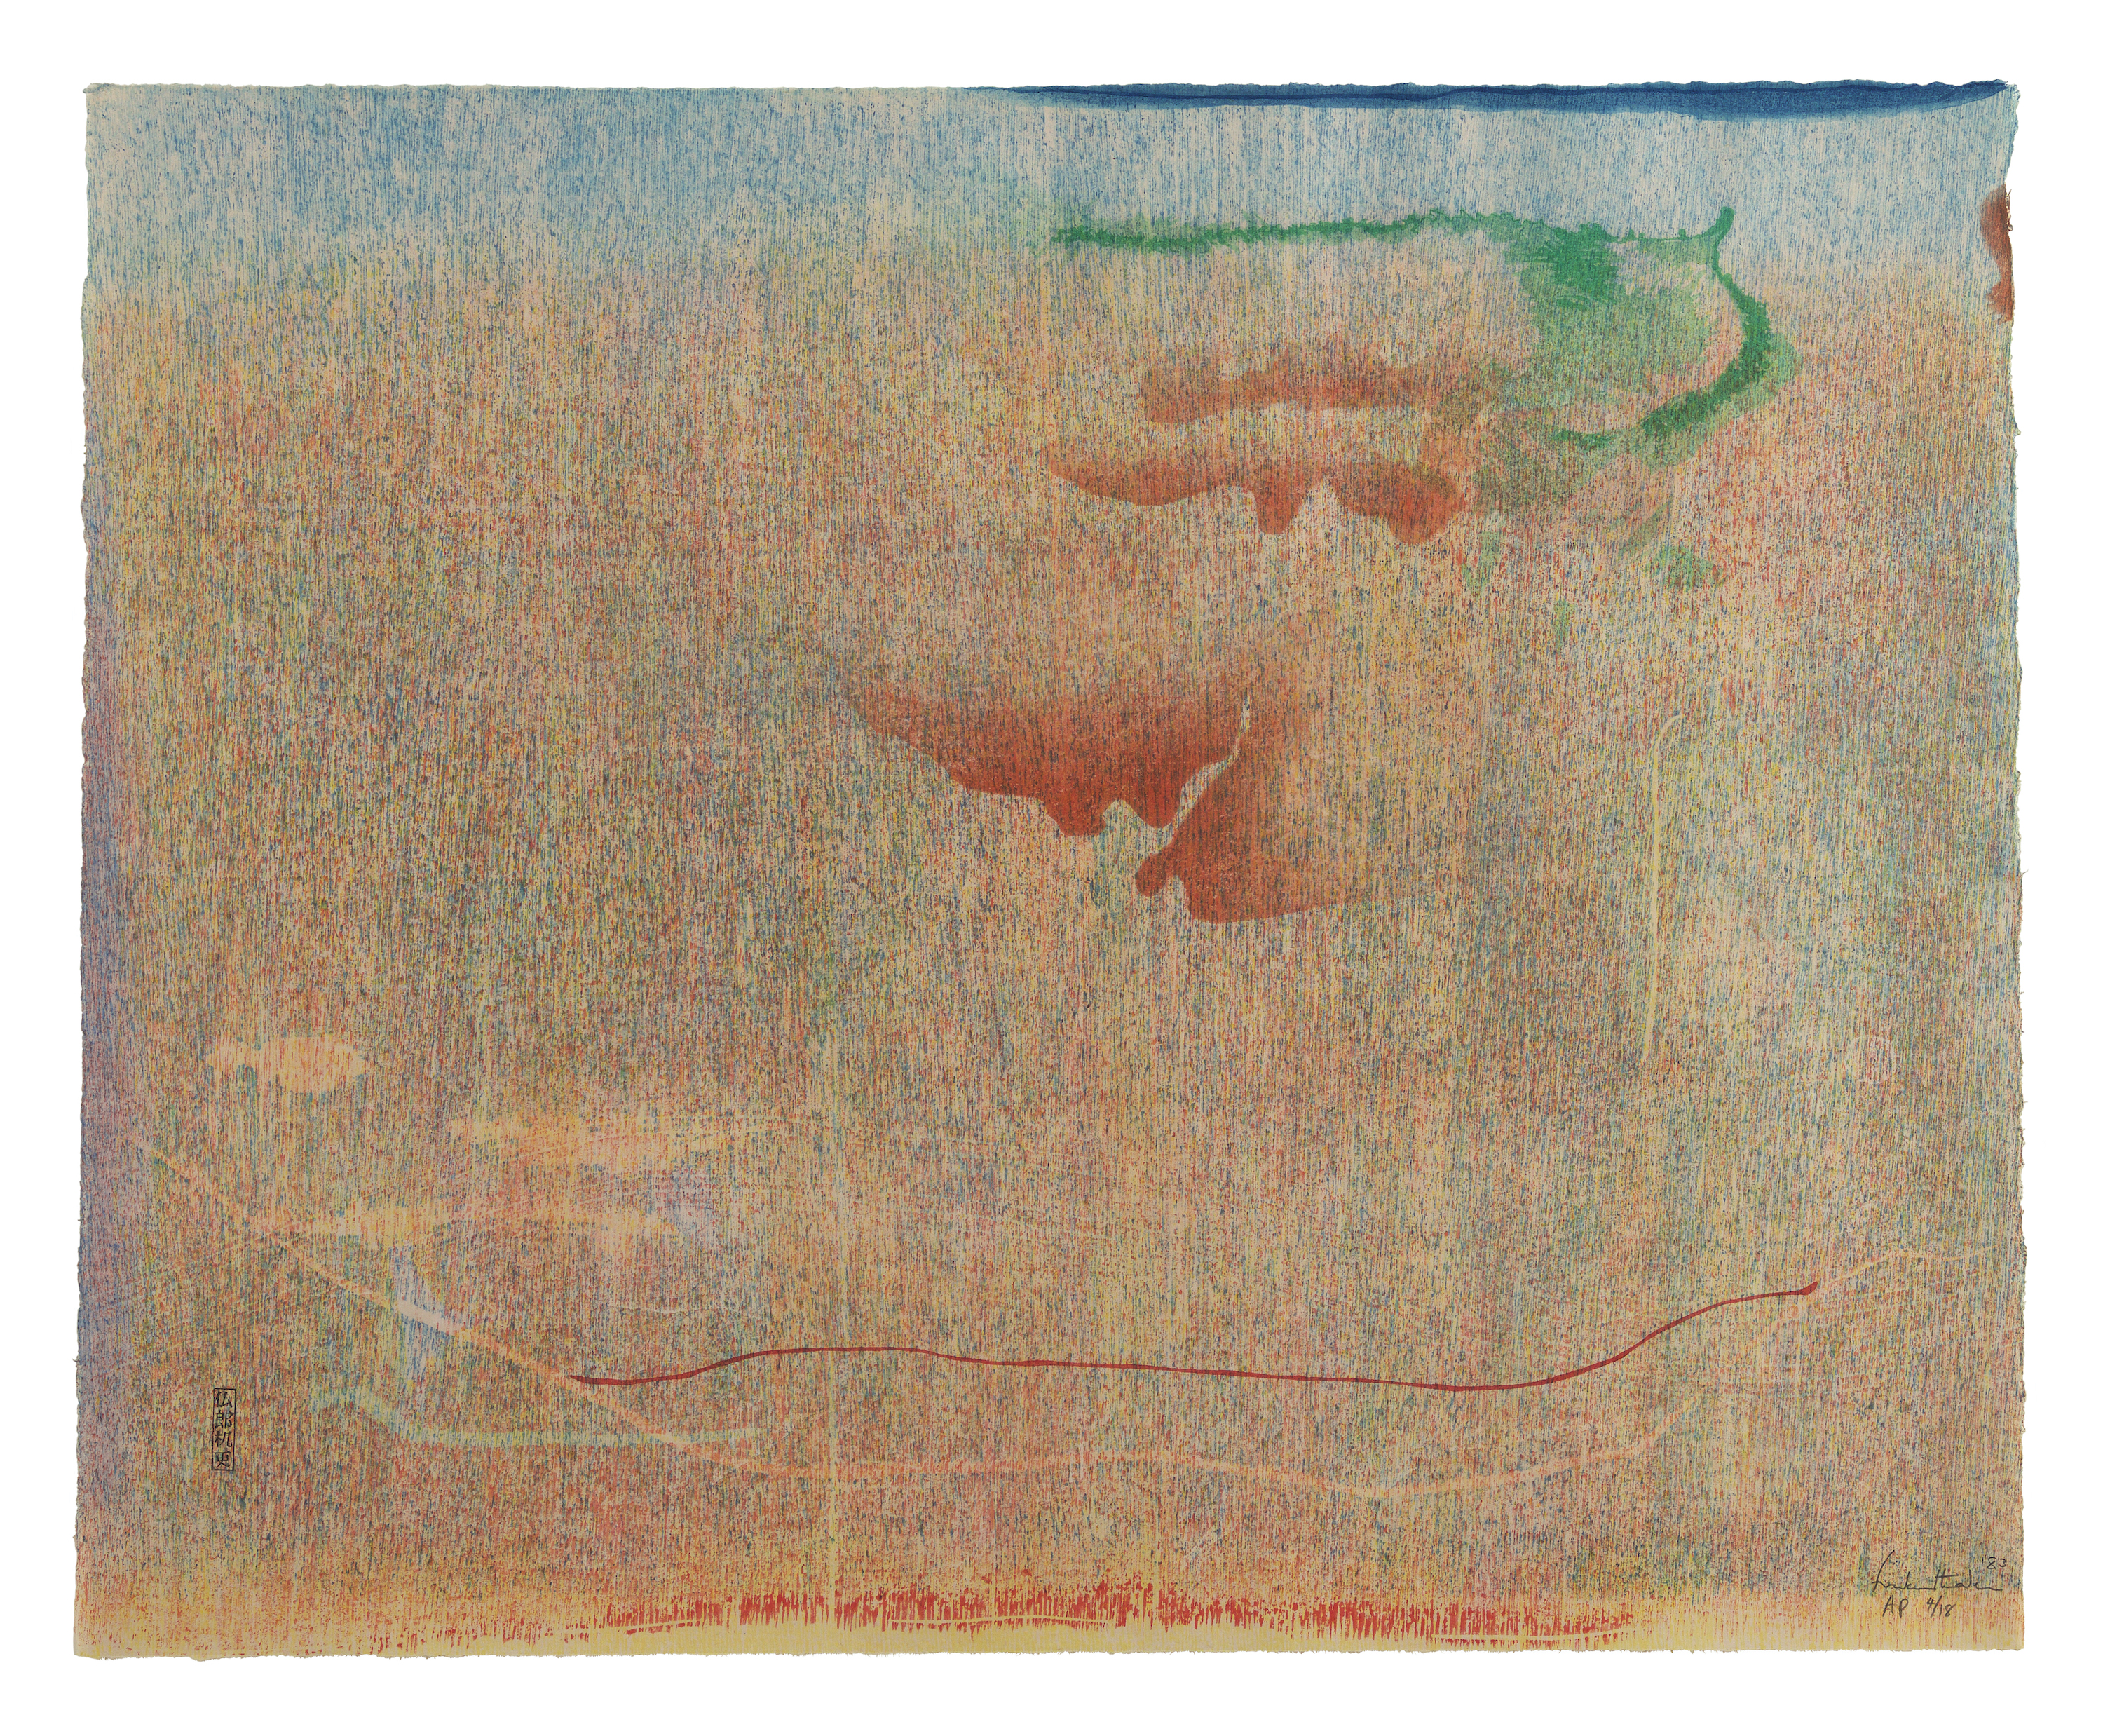 ヒマラヤスギの丘 by Helen Frankenthaler - 1983年 - 51.4 x 62.9 cm 